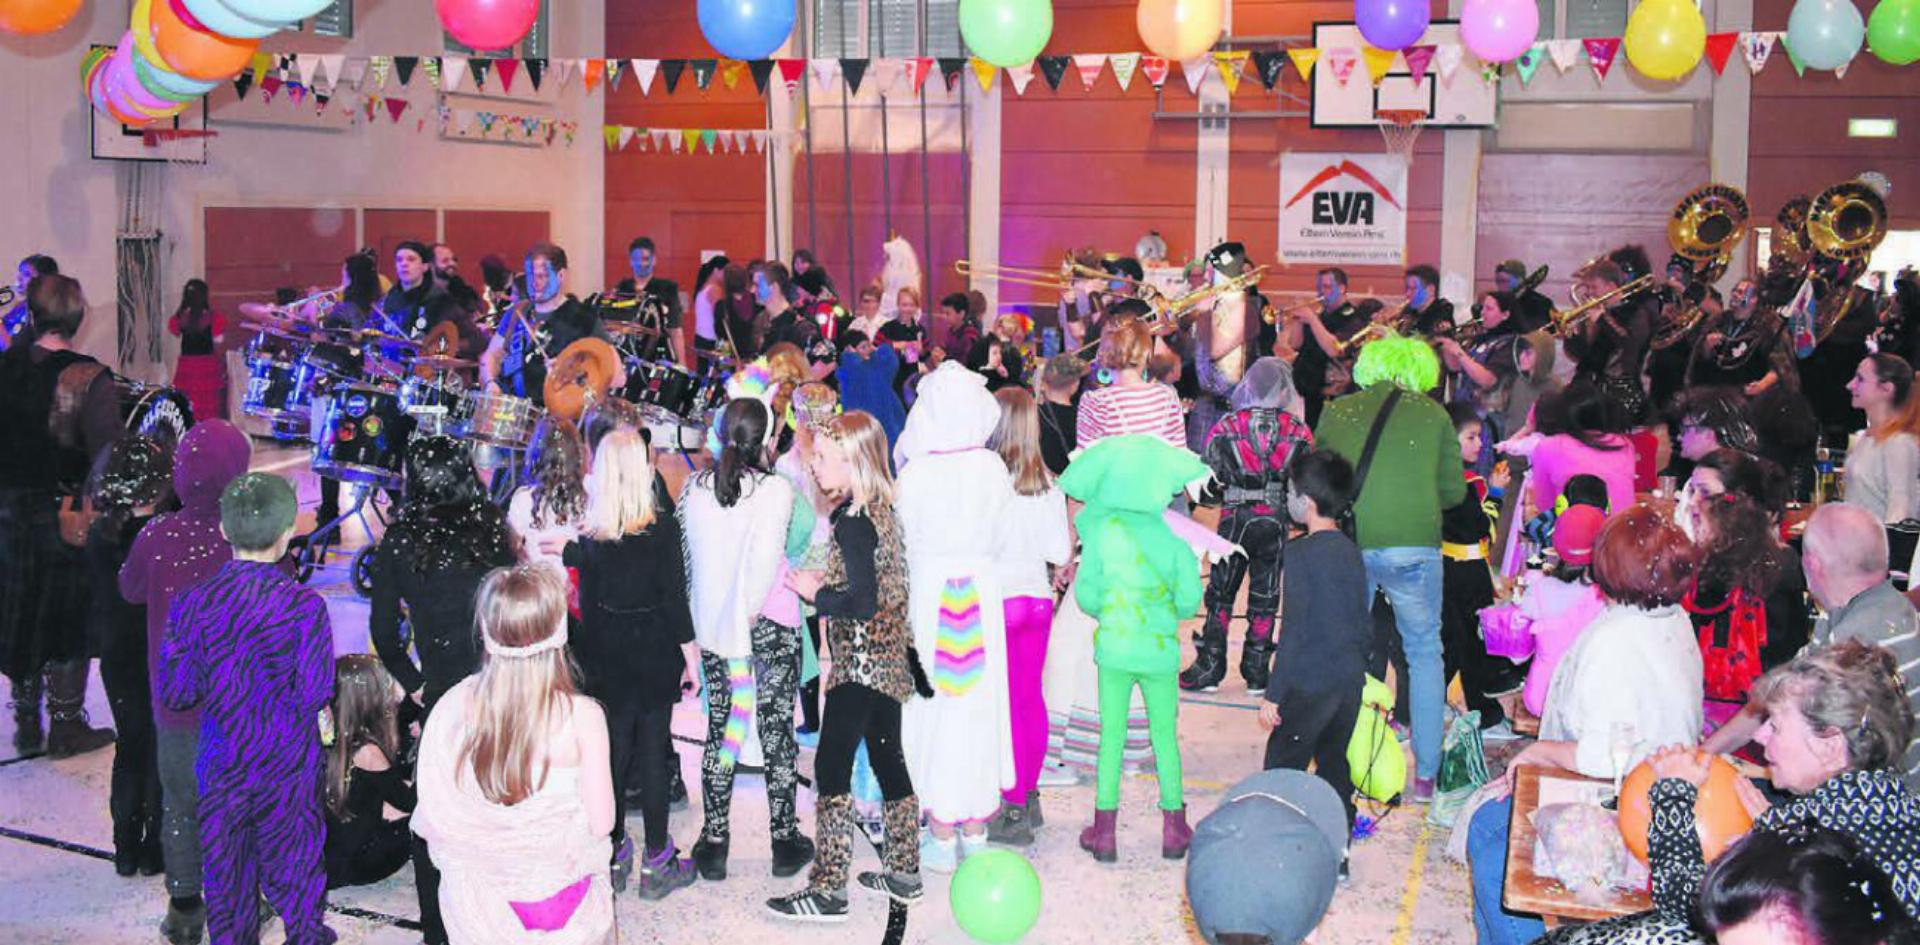 Bunt, laut, schrill: An der Kinderfasnacht in Arni feierten die Kinder gemeinsam mit ihren Eltern die fünfte Jahreszeit. Bilder: zg / Celeste Blanc